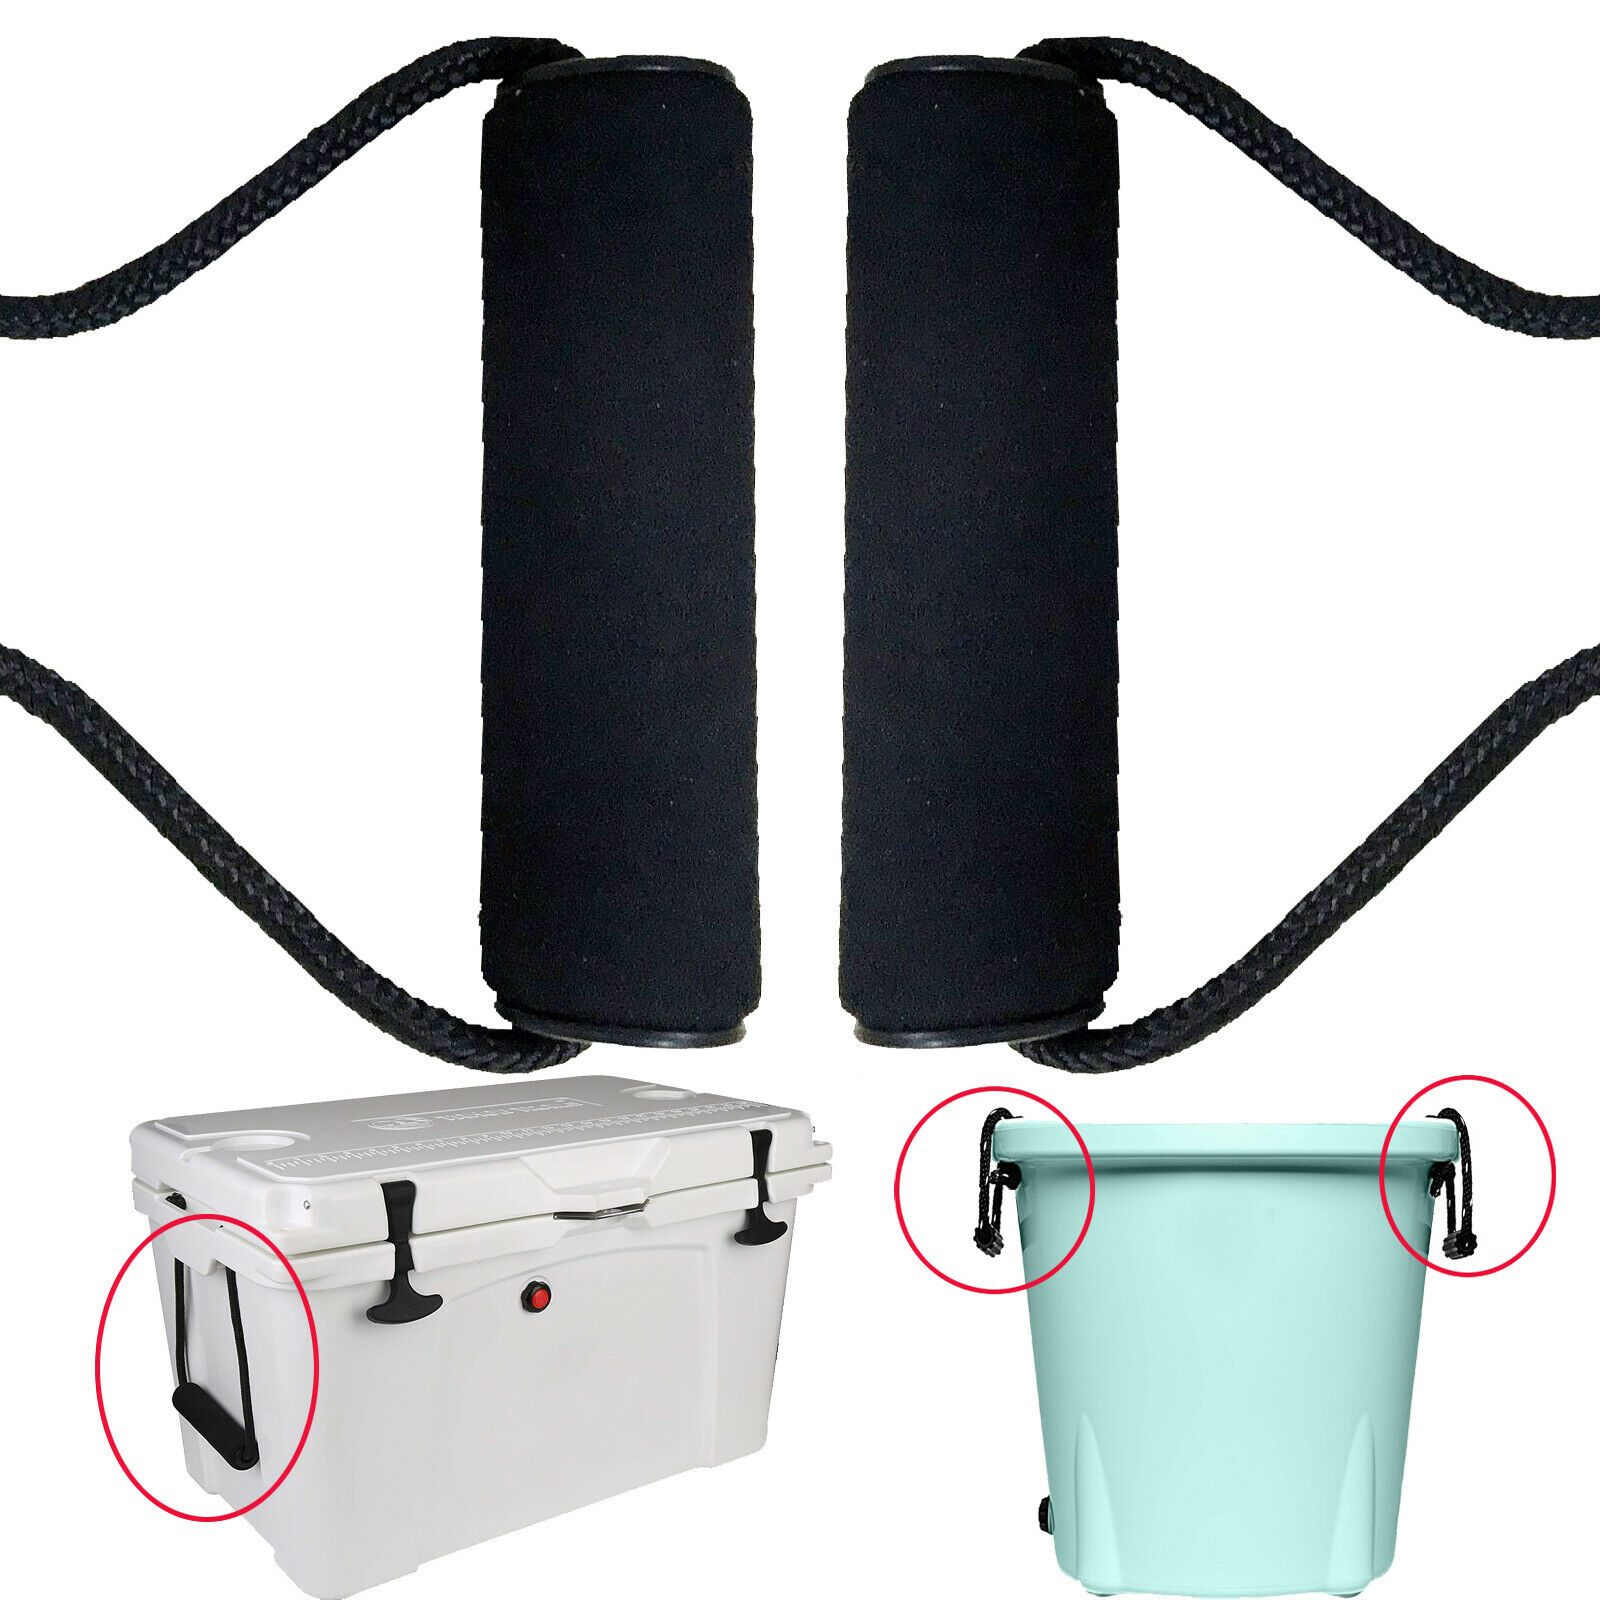 2 Pack Cooler Handvatten Vervanging Voor Yeti Tundra Handgrepen & Rtic Koelers Handgrepen